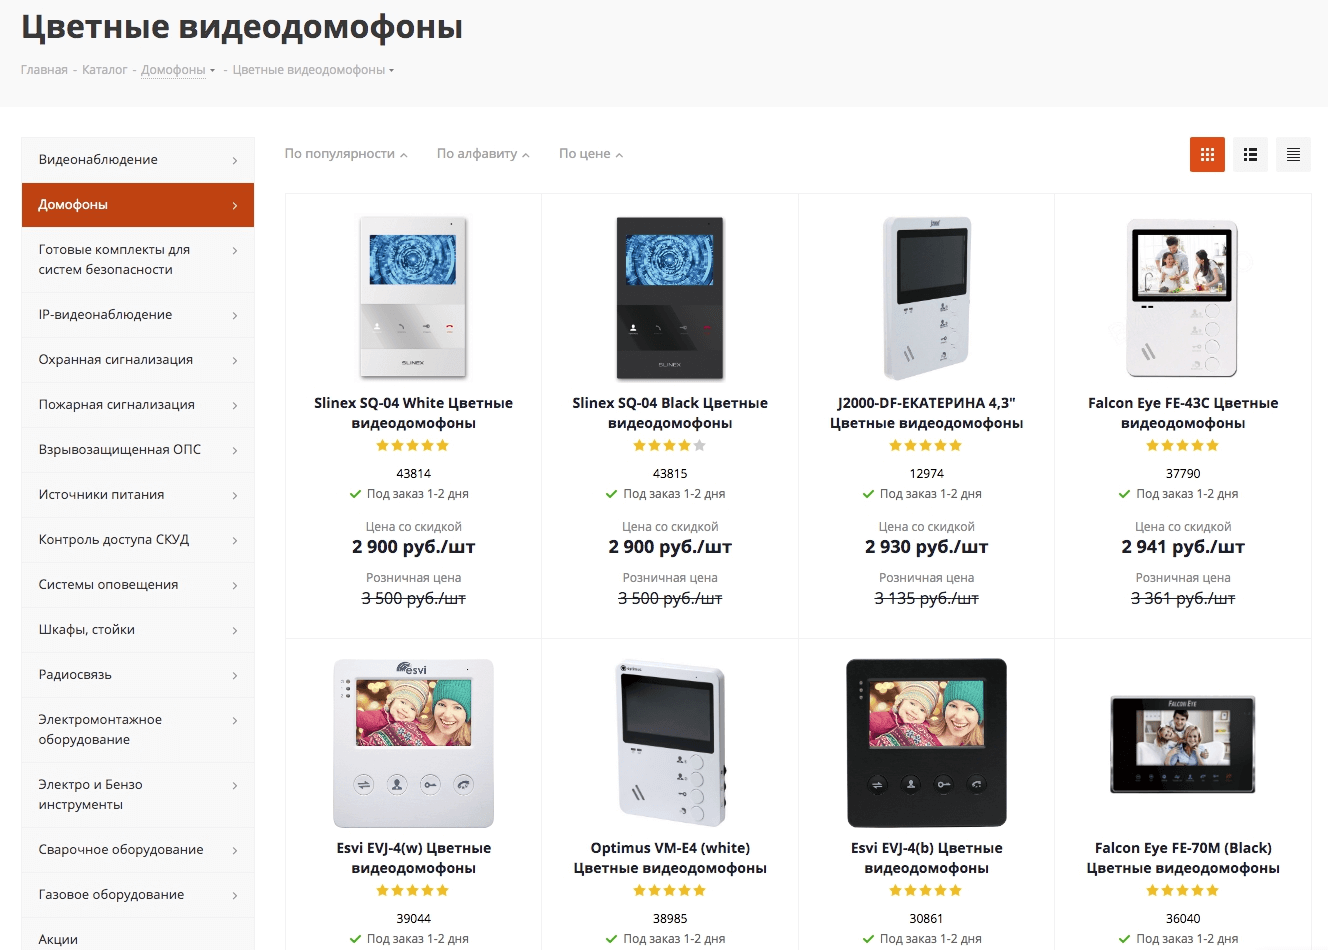 Раздел каталога “Цветные видеодомофоны” на сайте techno-rus.com